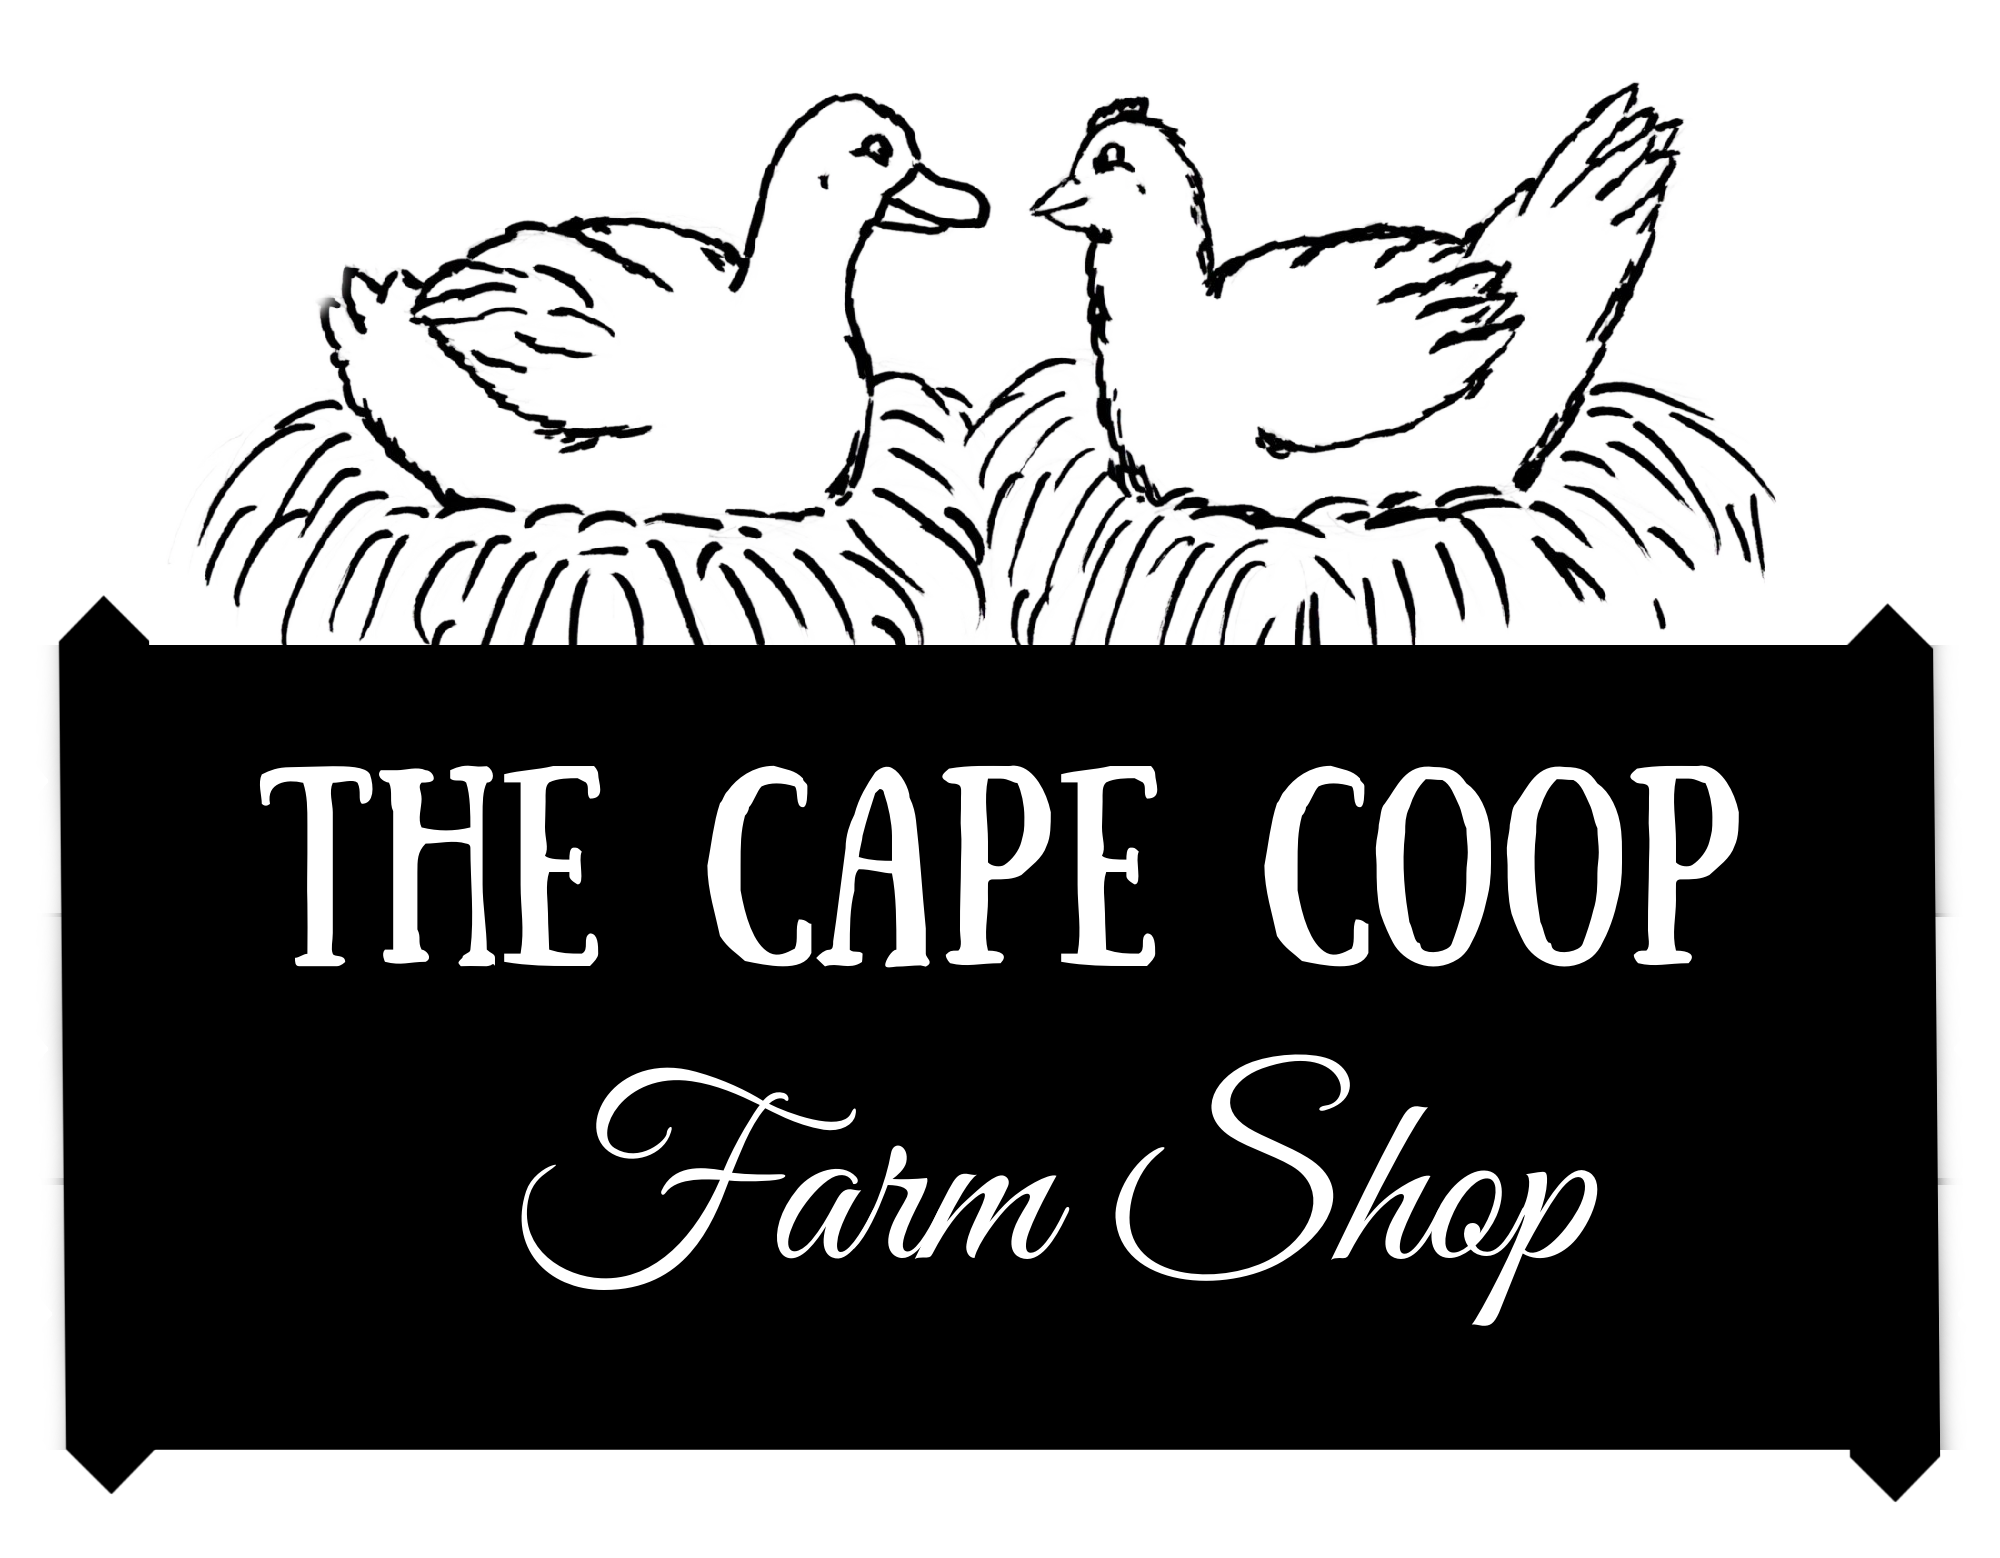 The Cape Coop Farm Soap Shop